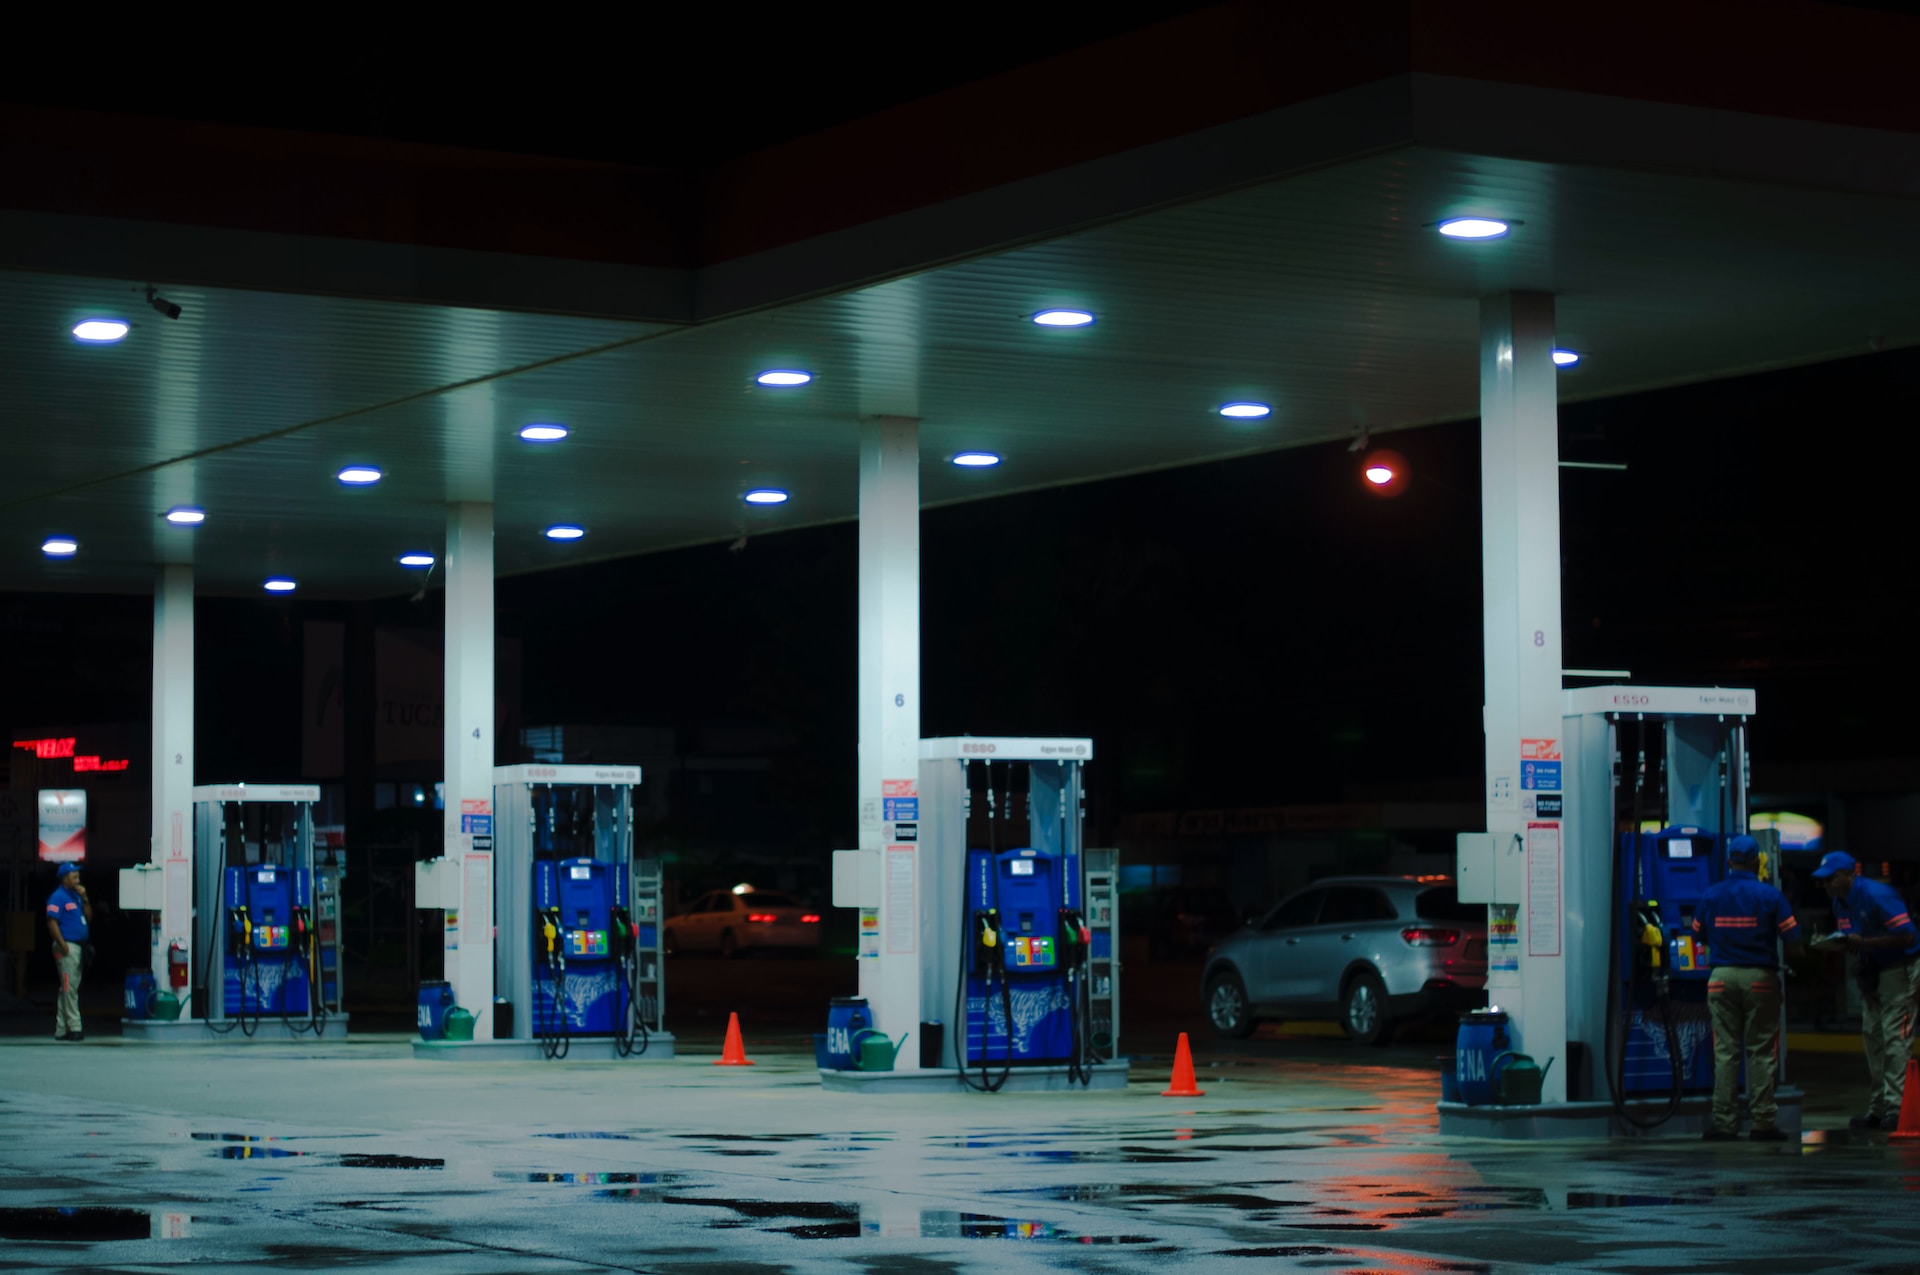 Tankstation i nærheden – Find en tankstation nær mig